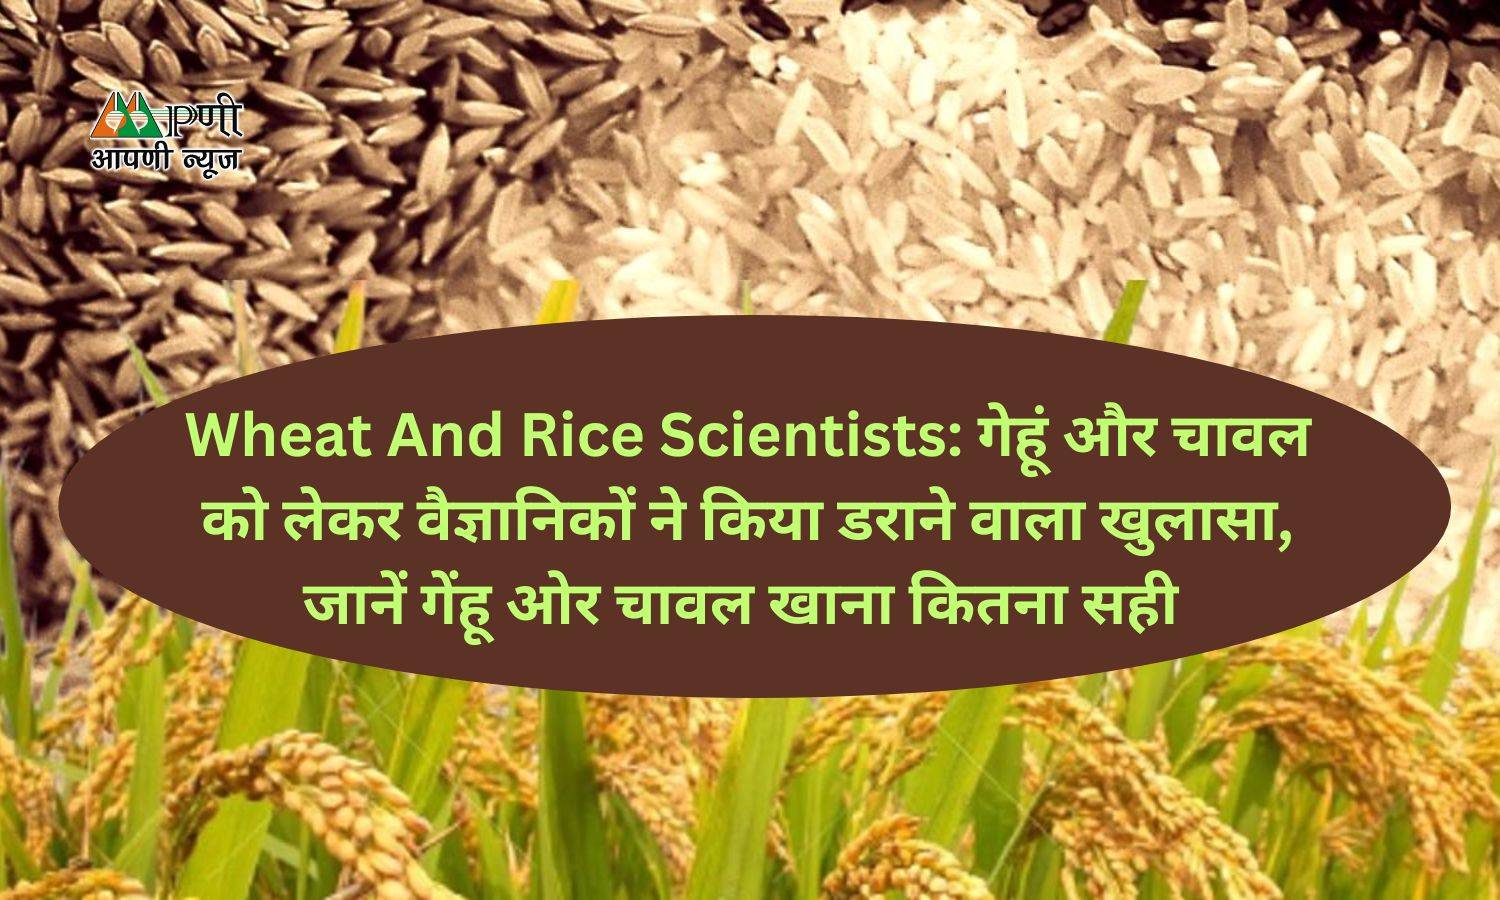 Wheat And Rice Scientists: गेहूं और चावल को लेकर वैज्ञानिकों ने किया डराने वाला खुलासा, जानें गेंहू ओर चावल खाना कितना सही